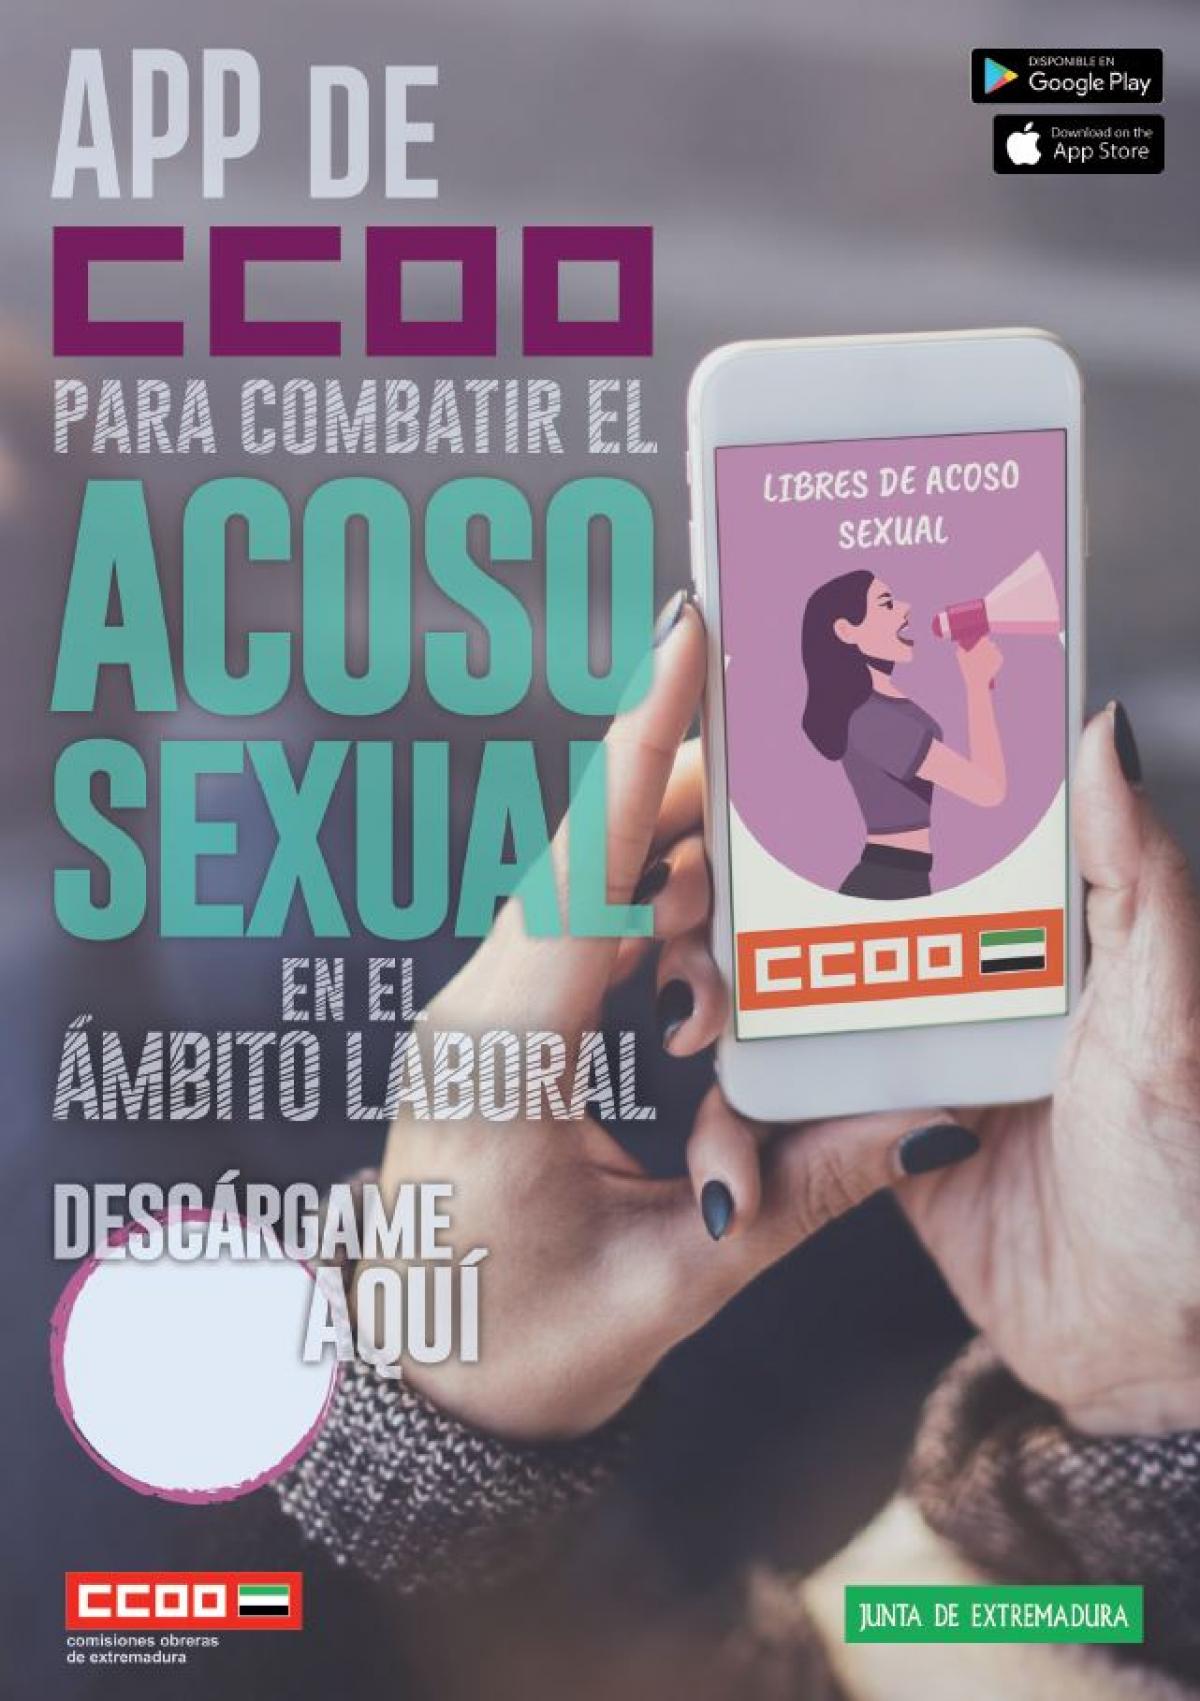 APP de CCOO para combatir el acoso sexual